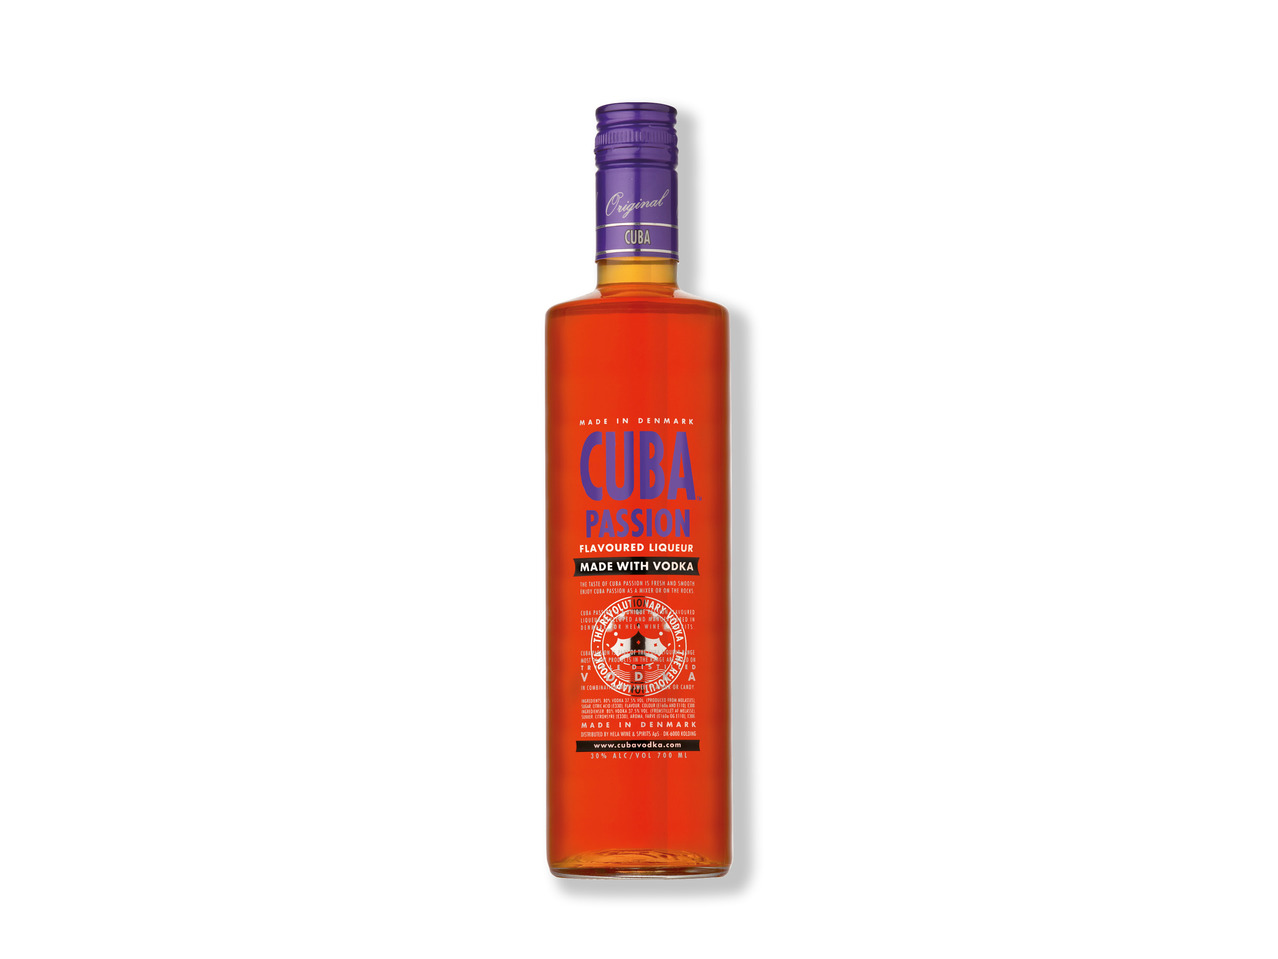 CUBA Vodkamix